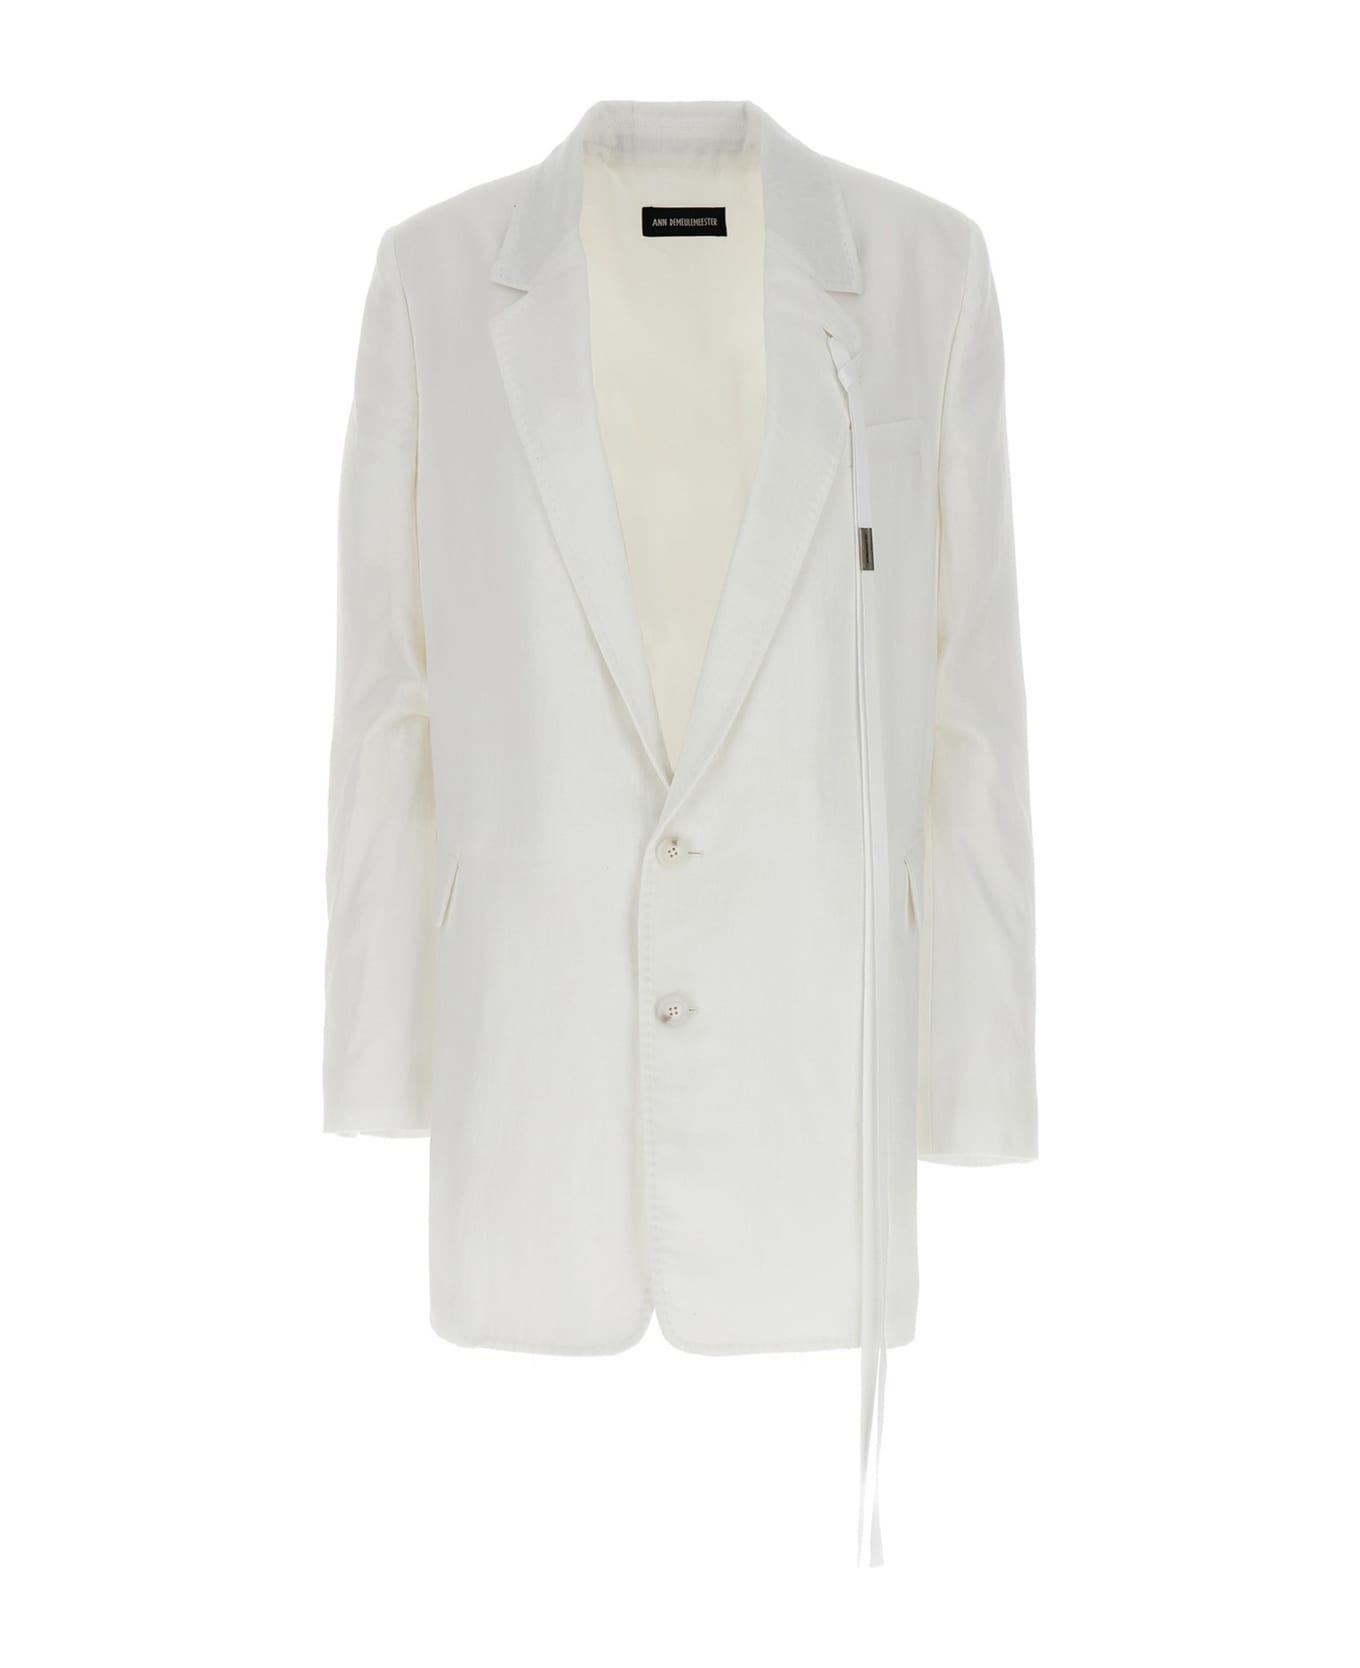 Ann Demeulemeester 'agnes' Blazer Jacket - White